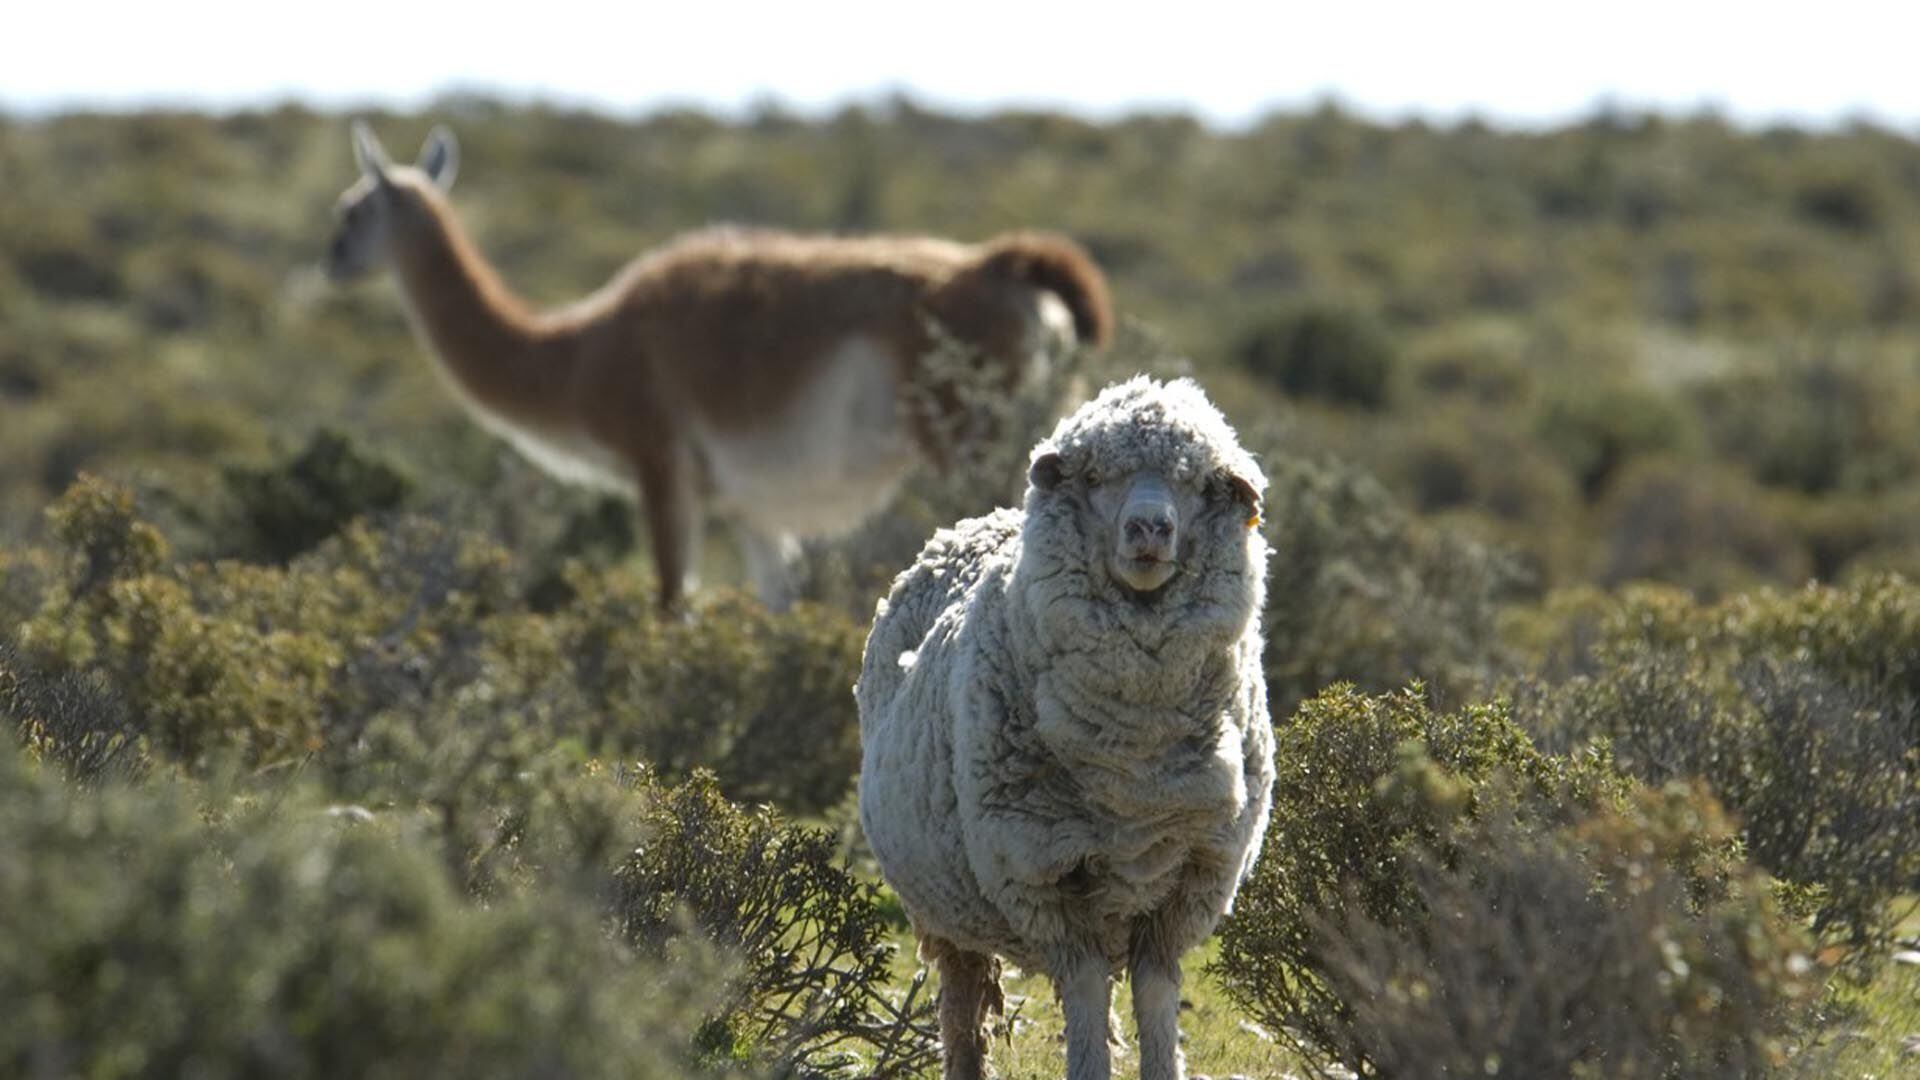 Una oveja, ganado lanar tradicional de la Patagonia, y detrás un guanaco, verdadera plaga que viene desplazando la ganadería ovina